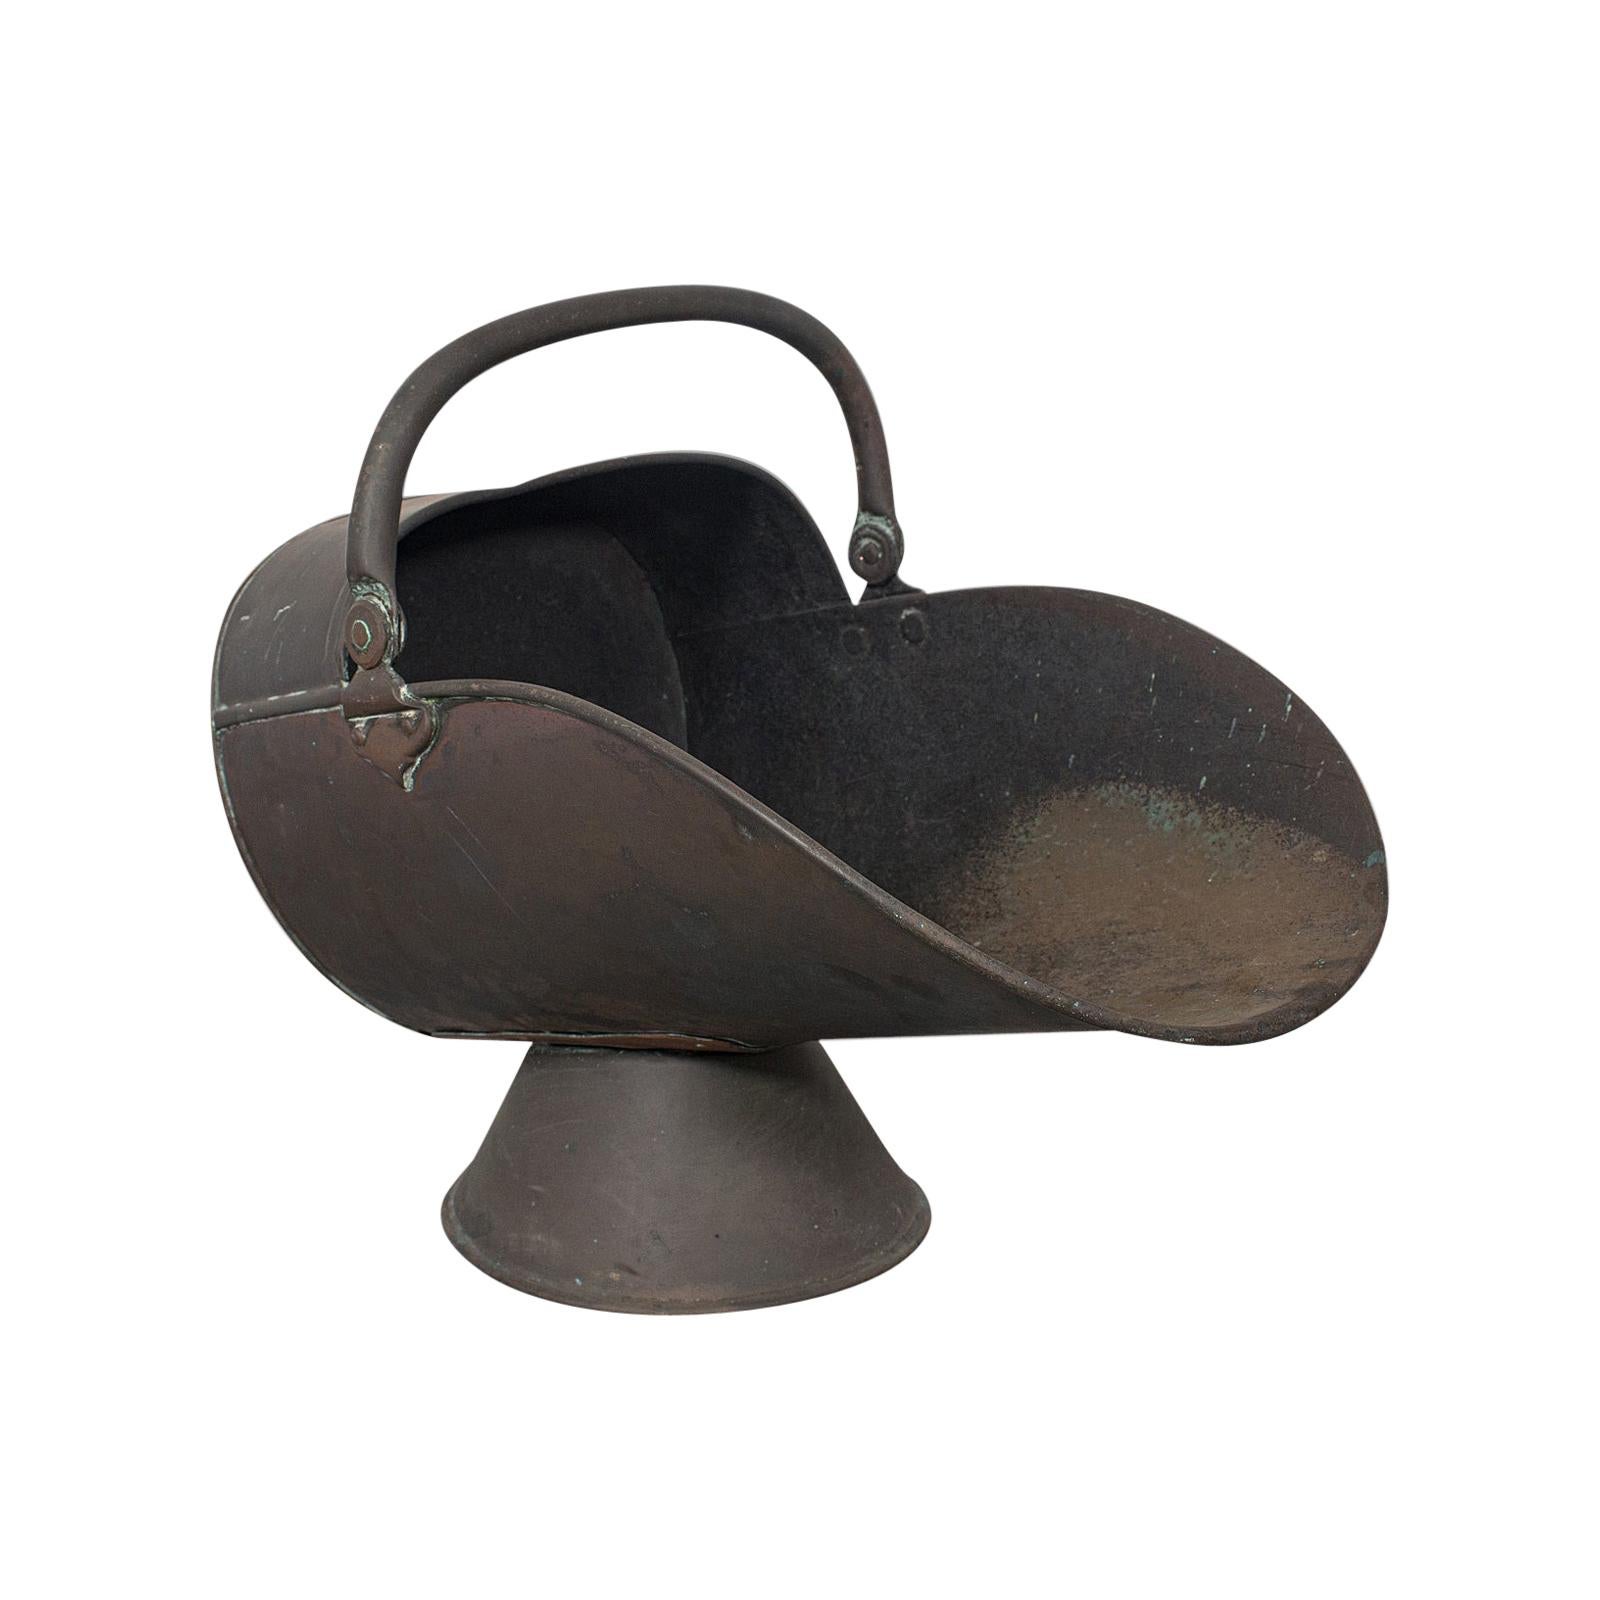 Bouteille à casque ancienne, anglaise, cuivre, cheminée, charbon, seau, victorienne, 1870